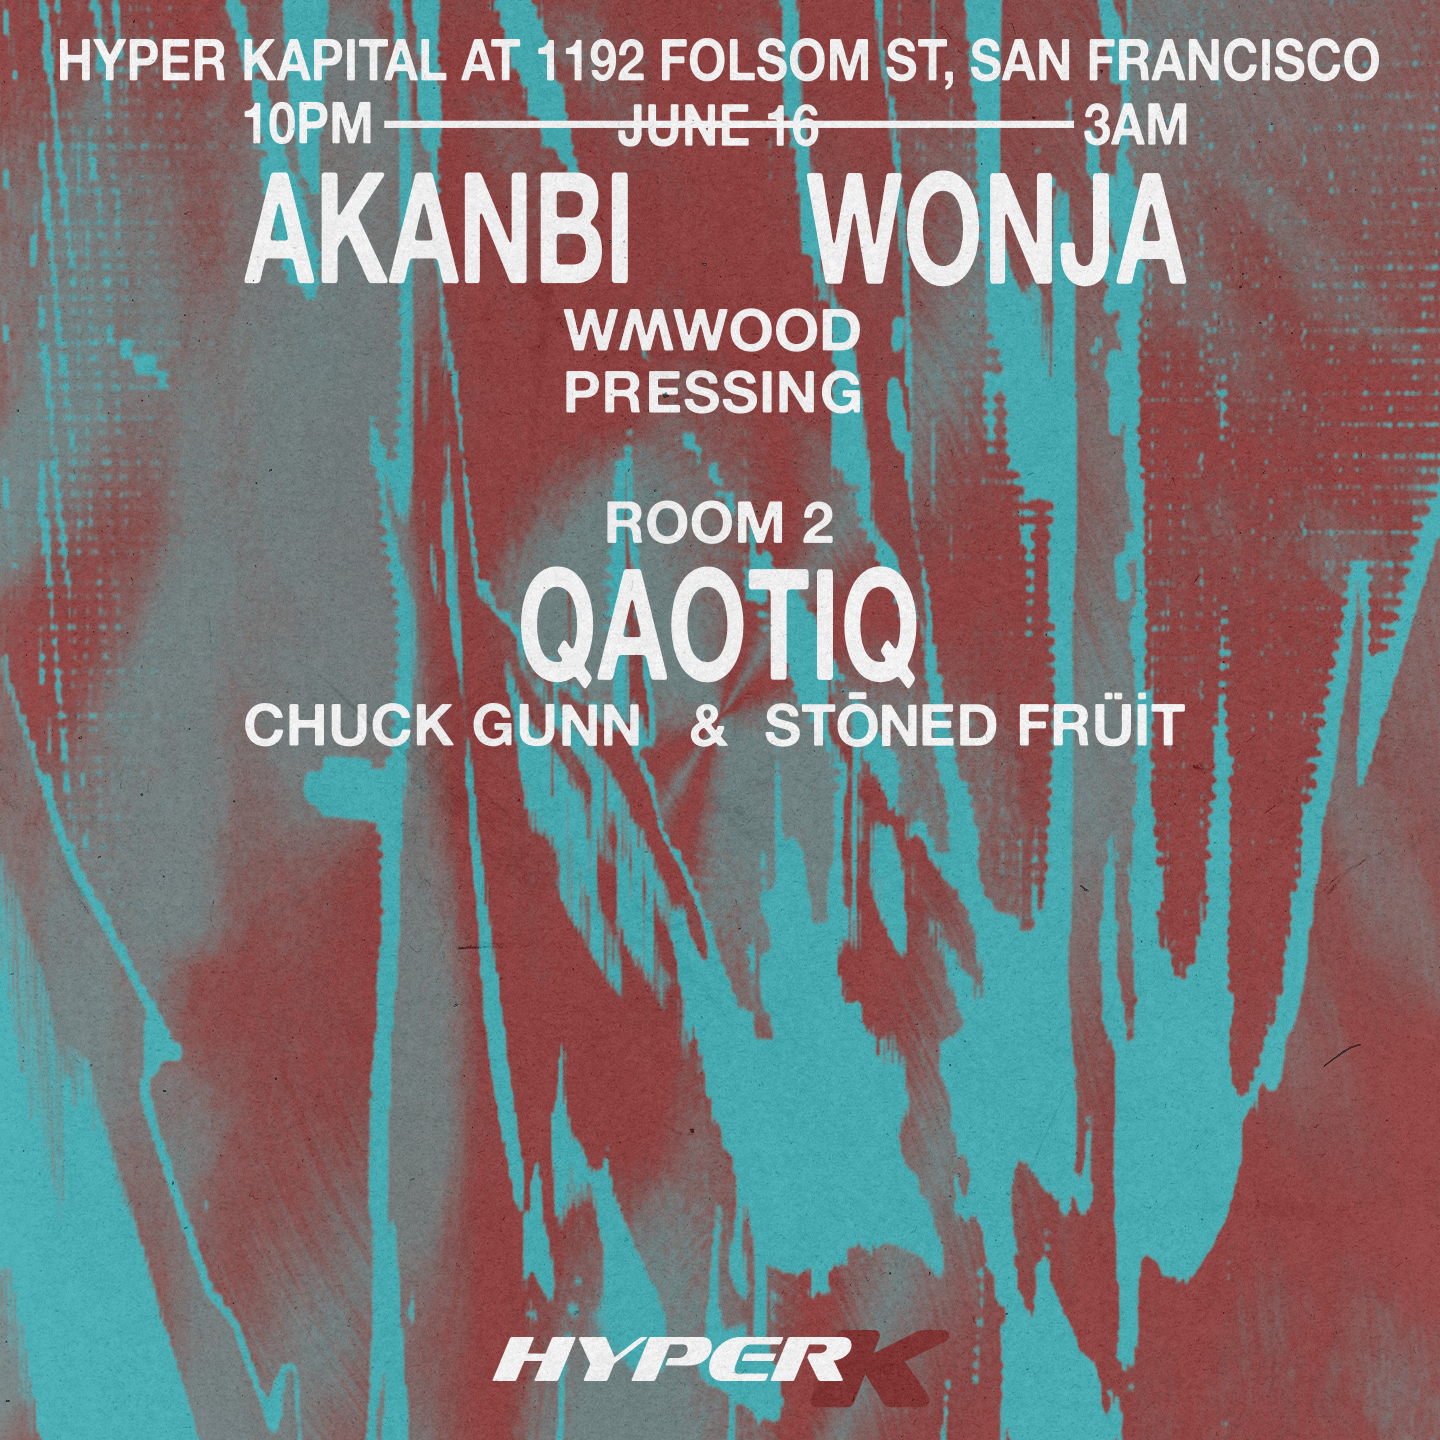 hyper_k 005 with Akanbi, Wonja, Qaotiq DJs - Página frontal